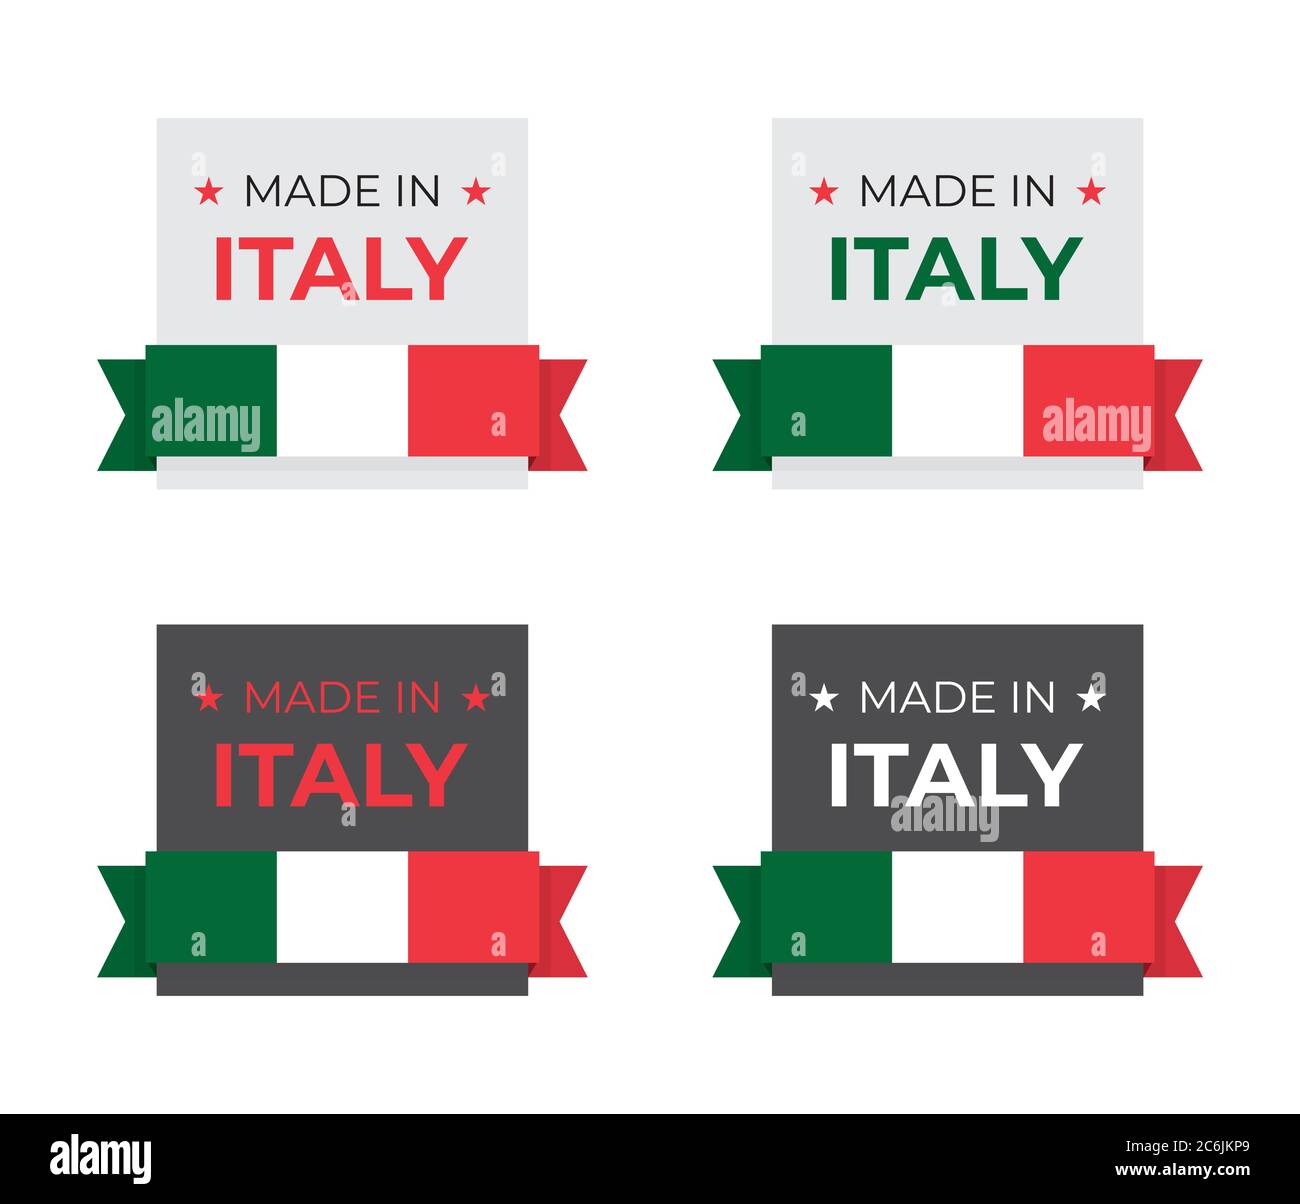 Made in Italy etichetta banner italiana grafica vettoriale per business e prodotto grafica di fondo ispirata al paese nazionale rosso e verde f Illustrazione Vettoriale